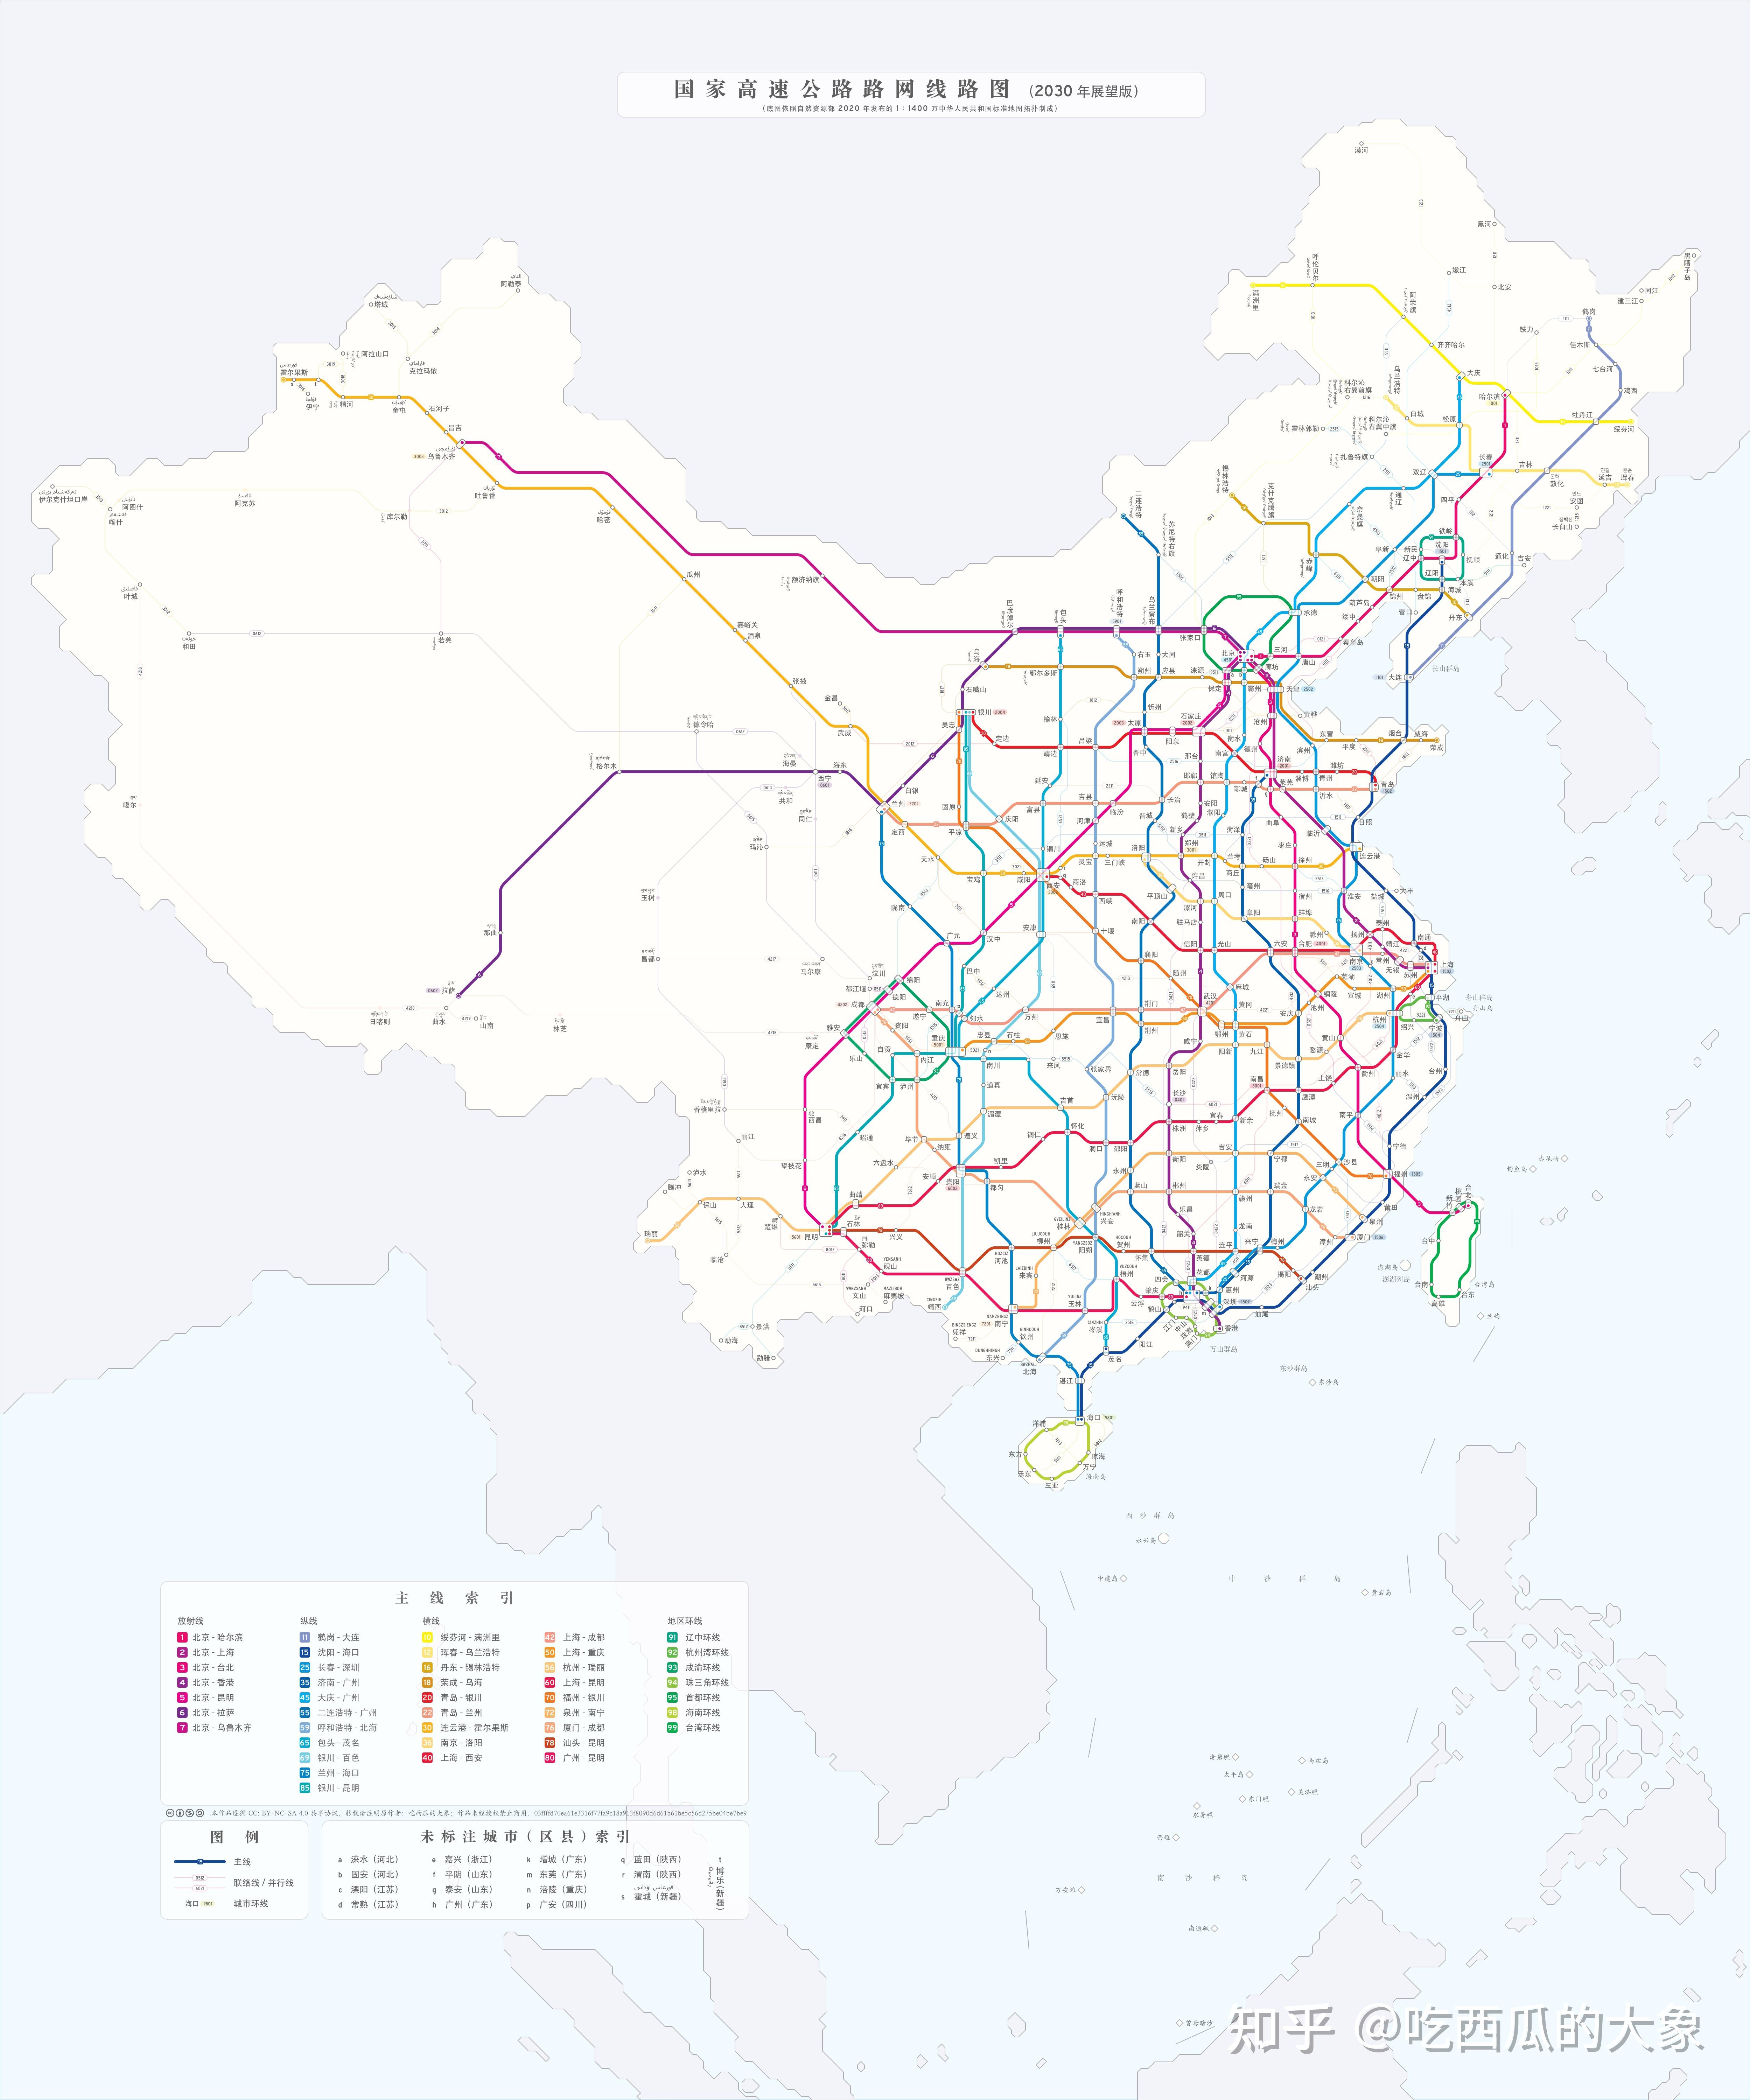 【自制/地铁向】中国高速公路路网线路图